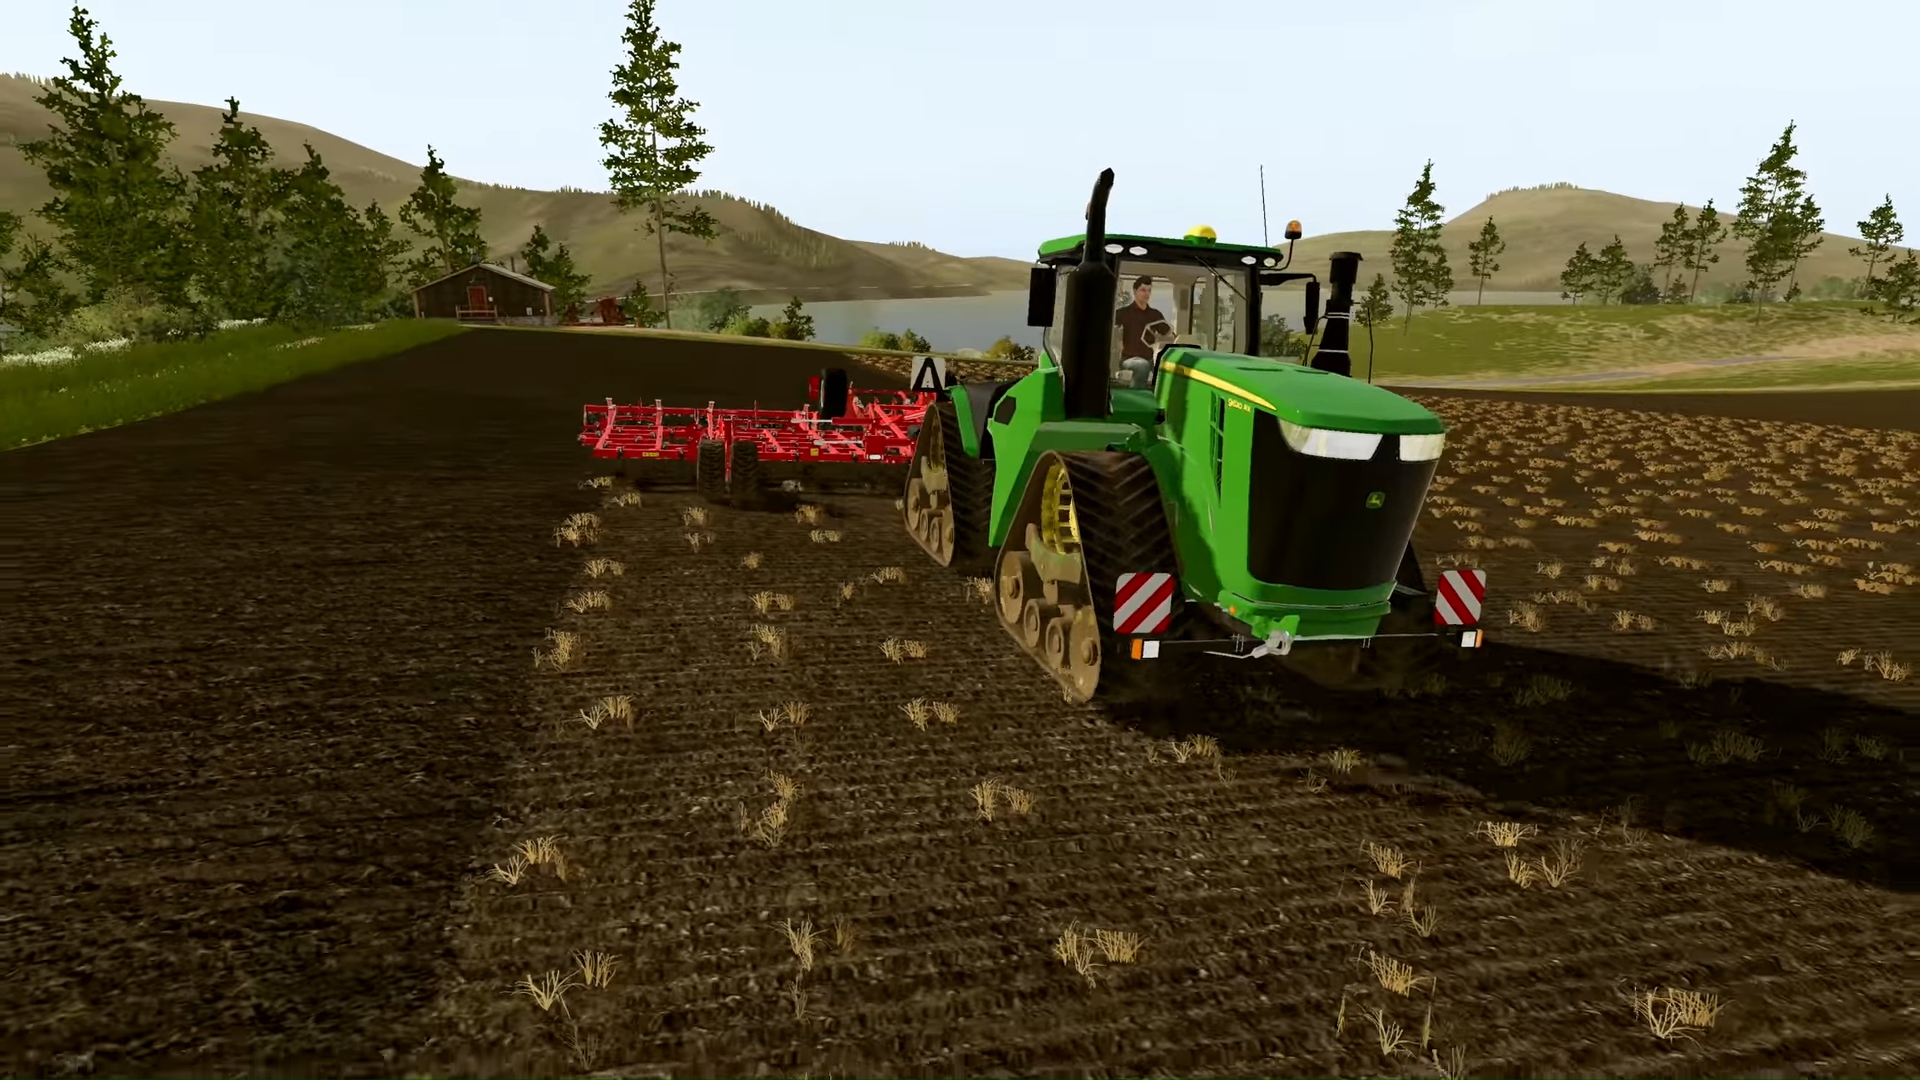 Najlepsze gry rolnicze - Farm Simulator 20. Zrzut ekranu przedstawia traktor jadący przez pola uprawne.